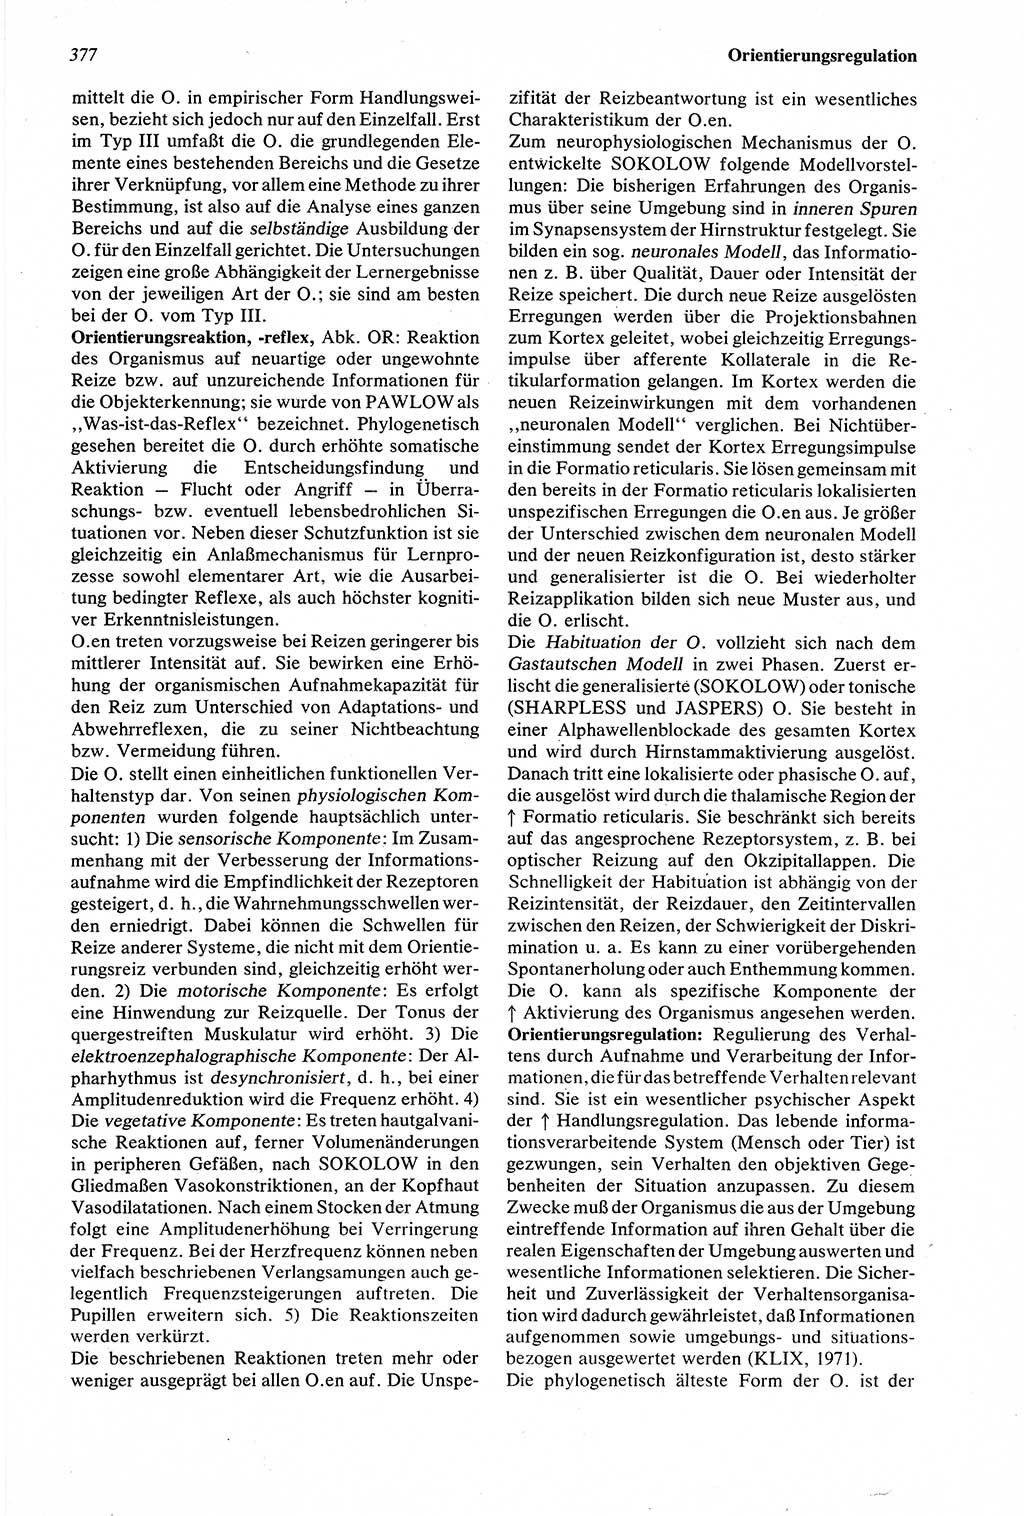 Wörterbuch der Psychologie [Deutsche Demokratische Republik (DDR)] 1976, Seite 377 (Wb. Psych. DDR 1976, S. 377)